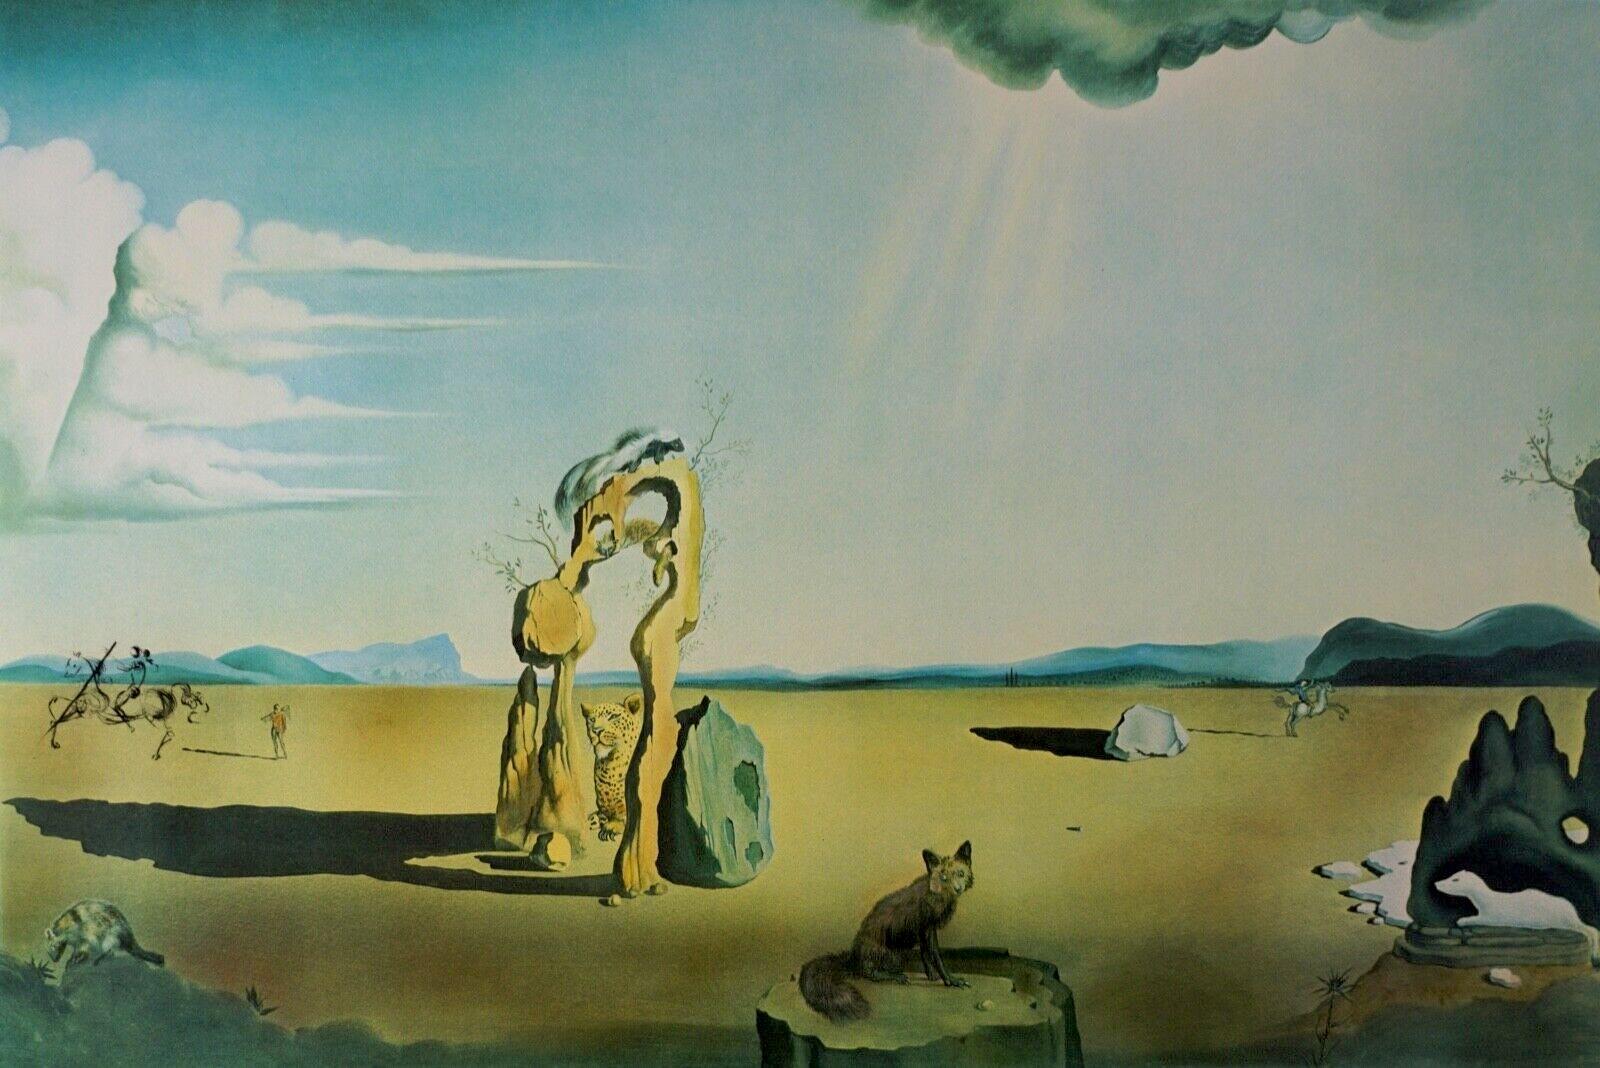 Les Betes Sauvages dans le Desert - Print by Salvador Dalí